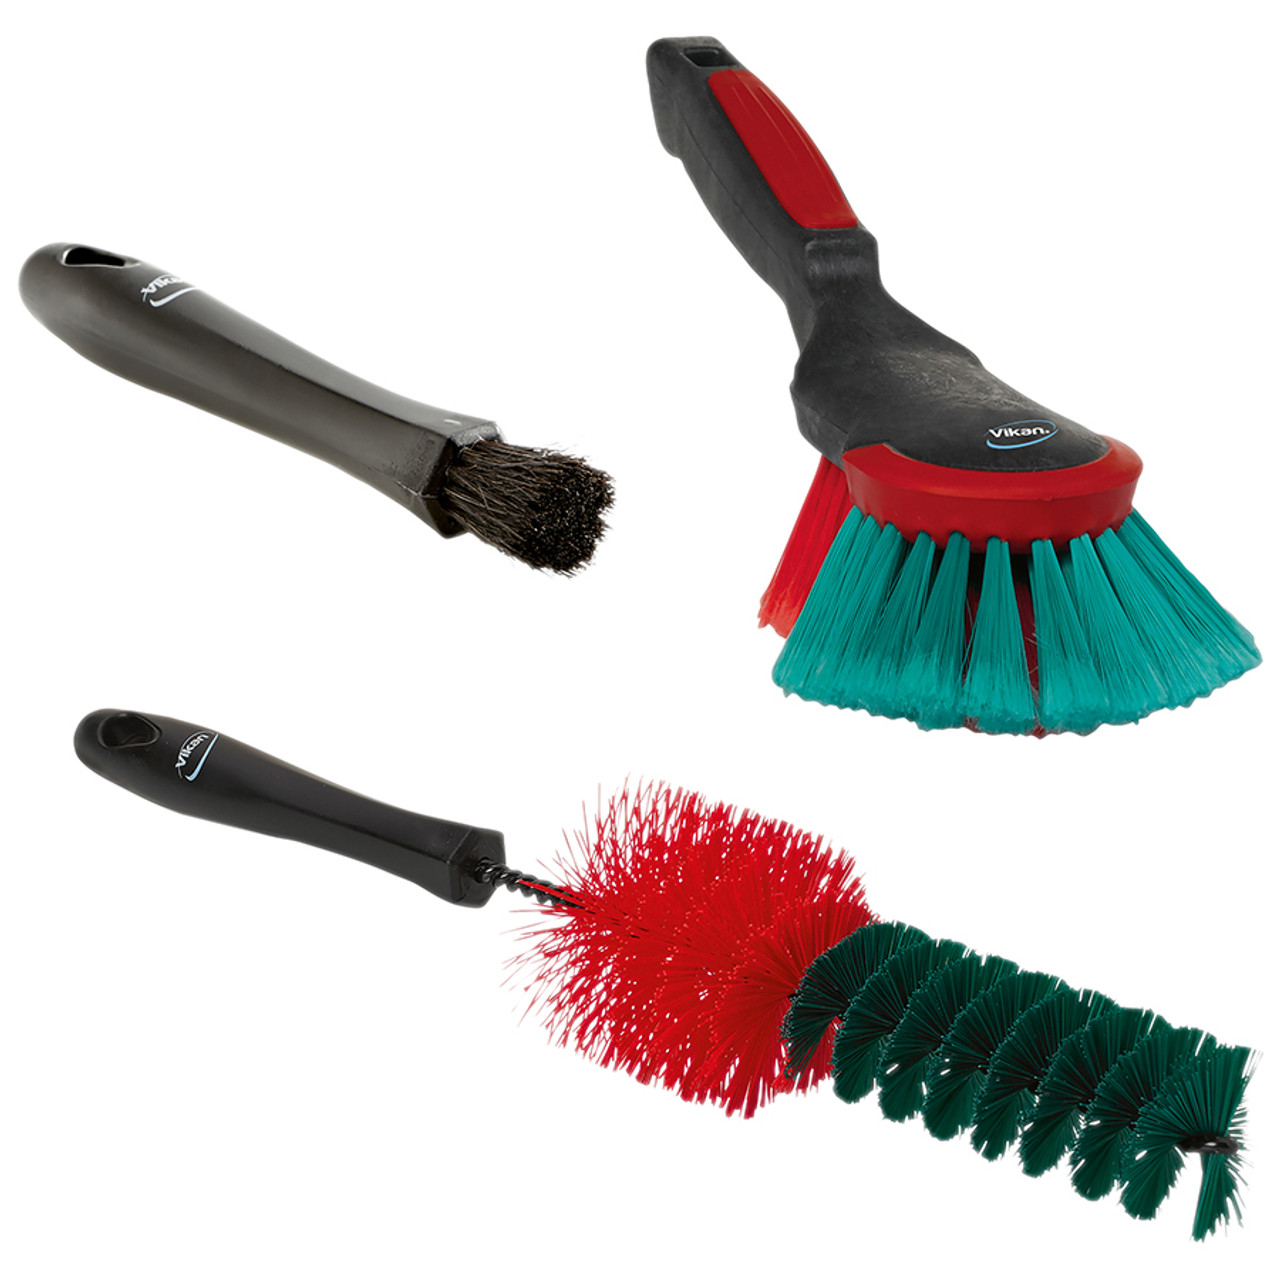 Automotive Cleaning Brush Kit